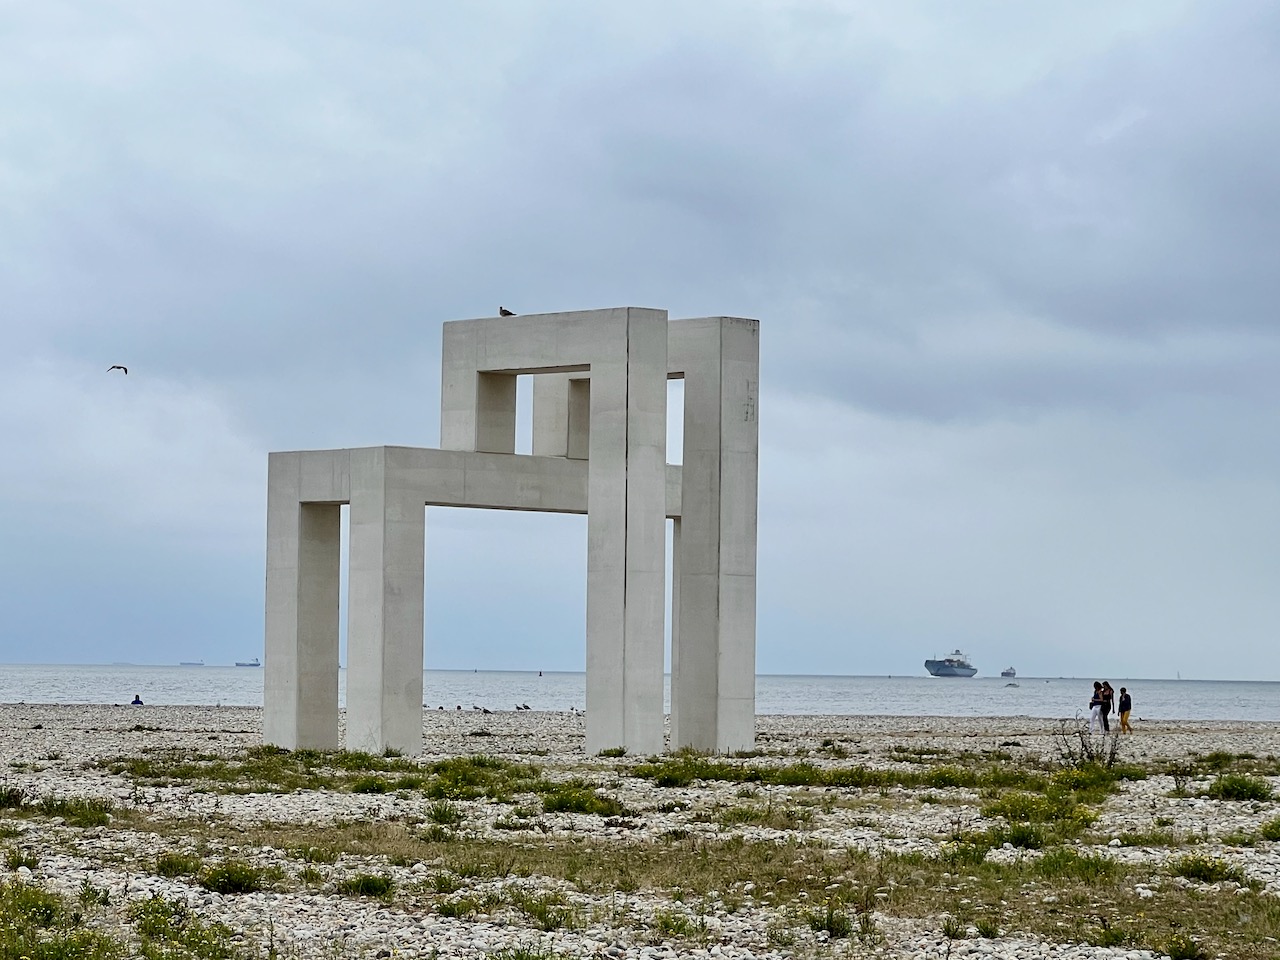 Sur la plage de galets, une arche rappelant l'ossature des batiments Perret de la ville